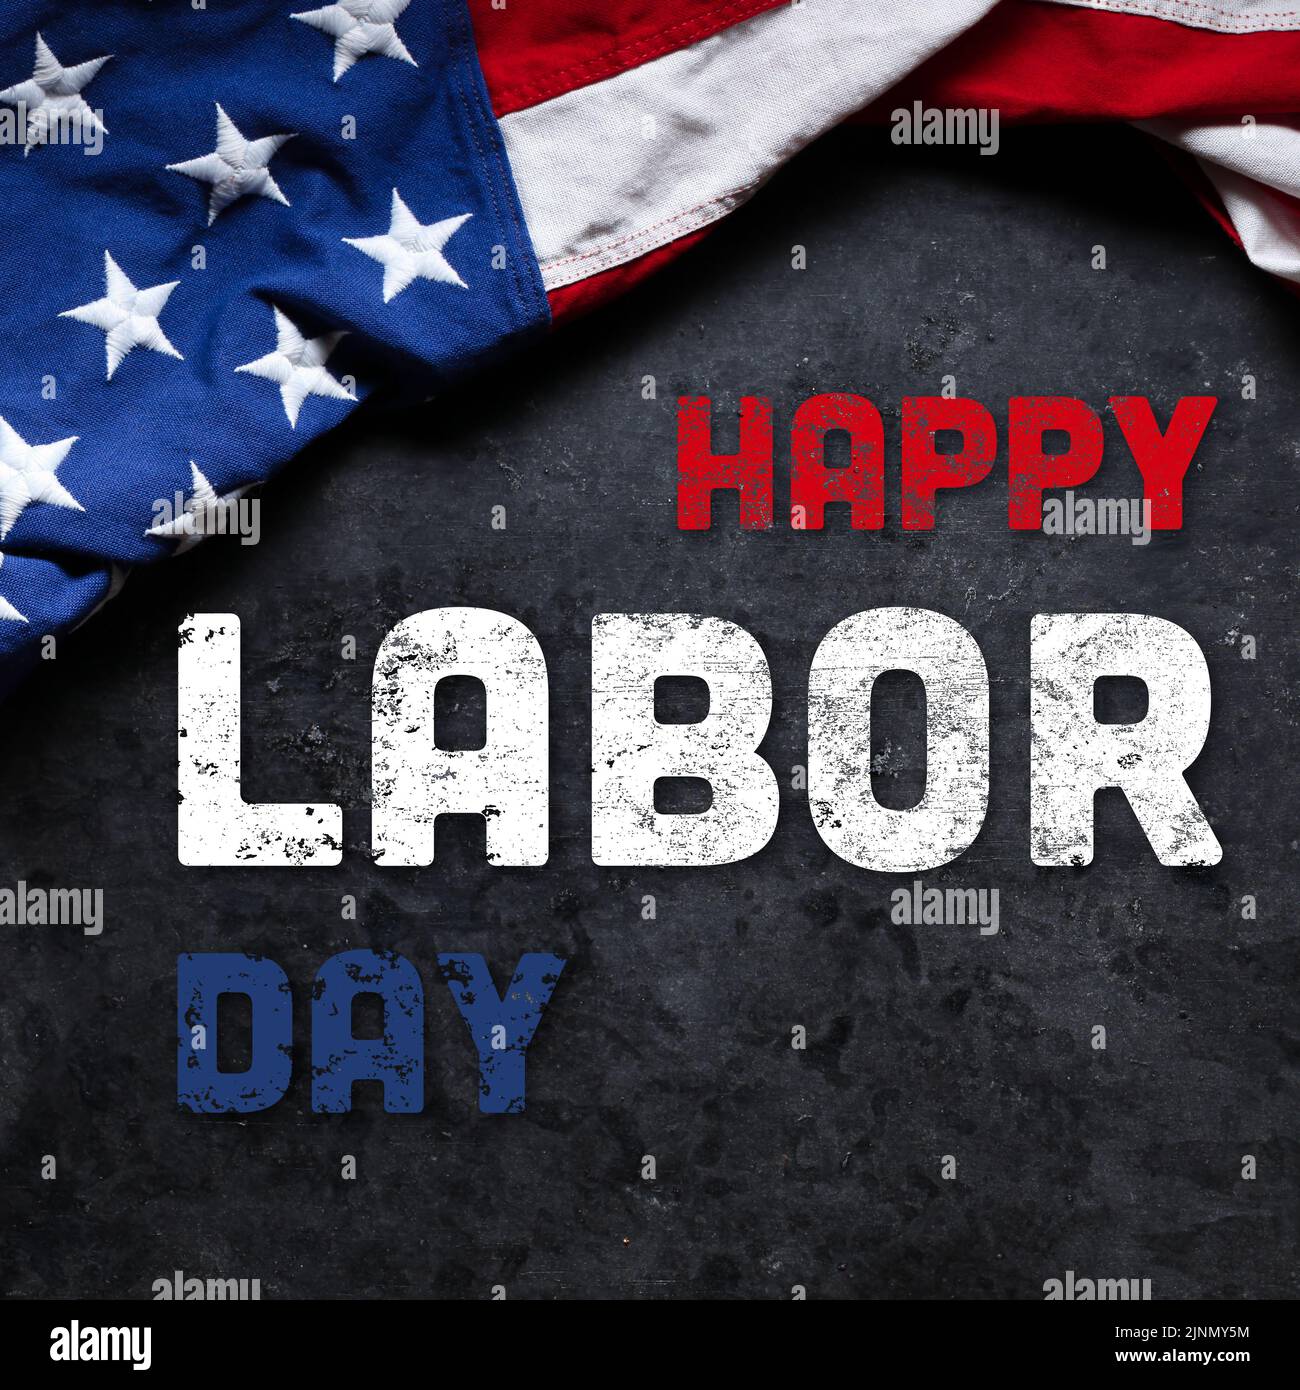 US-amerikanische Flagge auf dunklem Grunge-Hintergrund. Zur Feier des USA Labor Day. Mit Happy Labor Day Text. Stockfoto